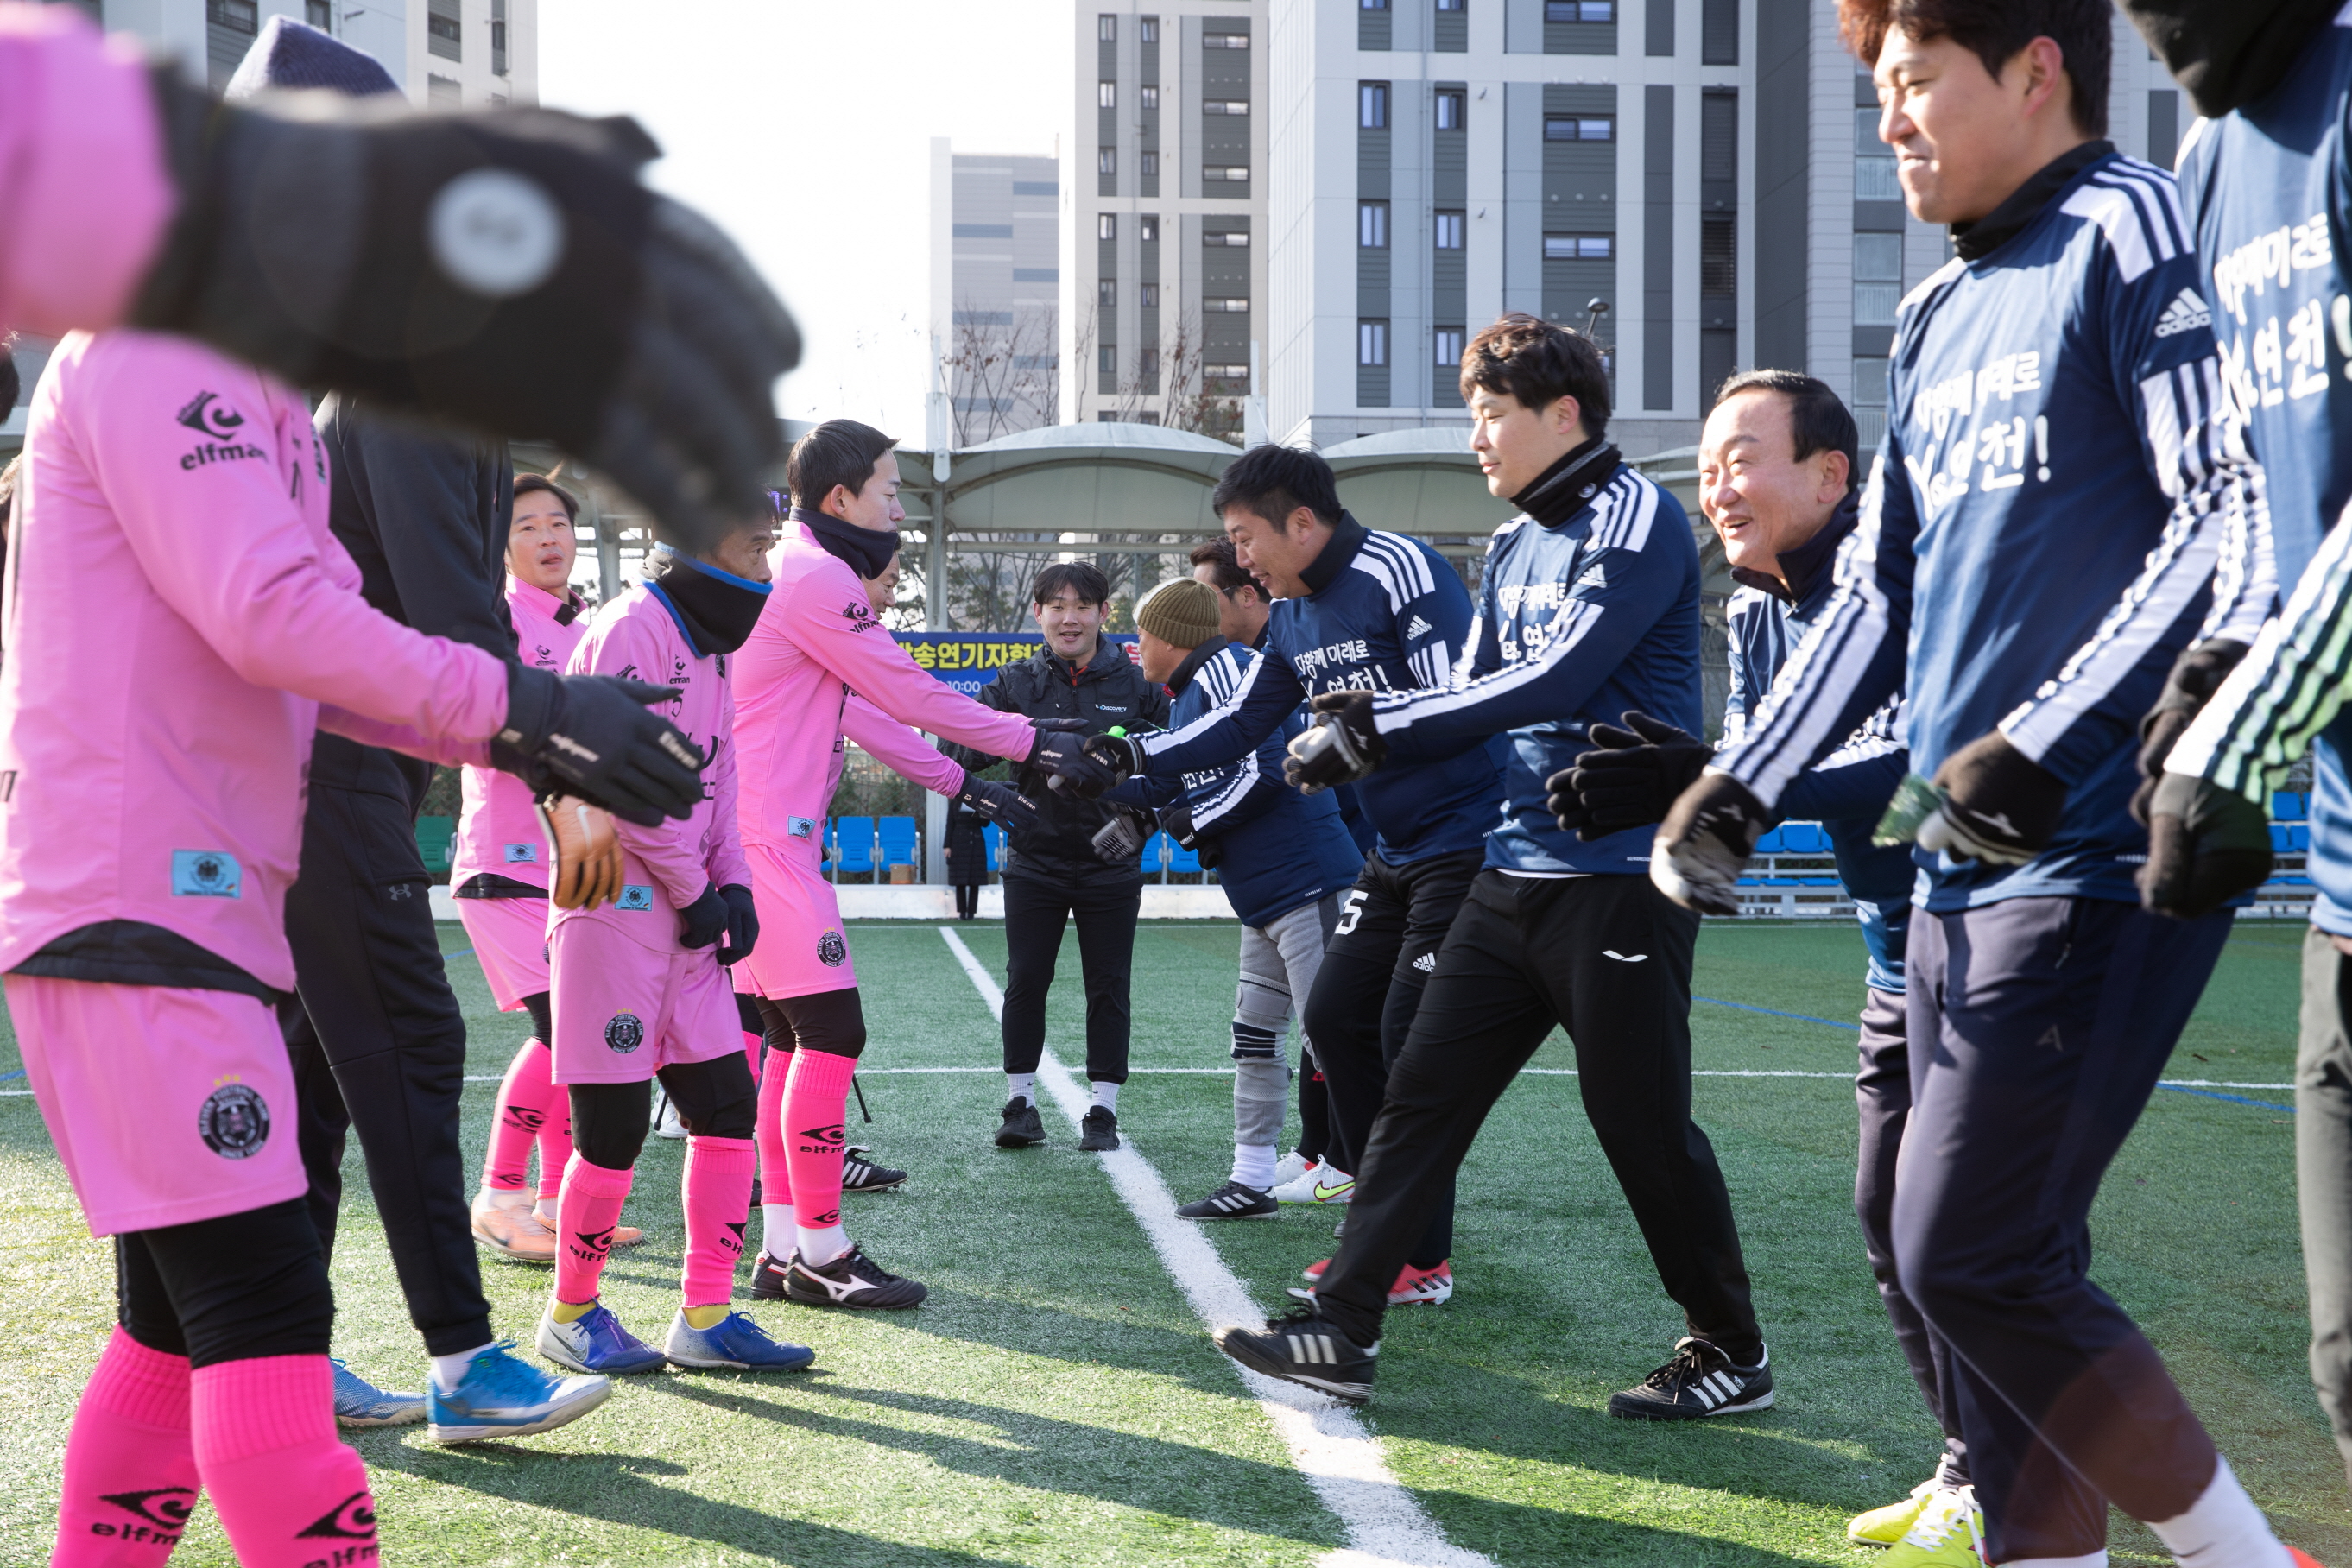 [23. 11. 18.] 한국방송연기자협회 친선축구대회 이미지 1 - 본문에 자세한설명을 제공합니다.